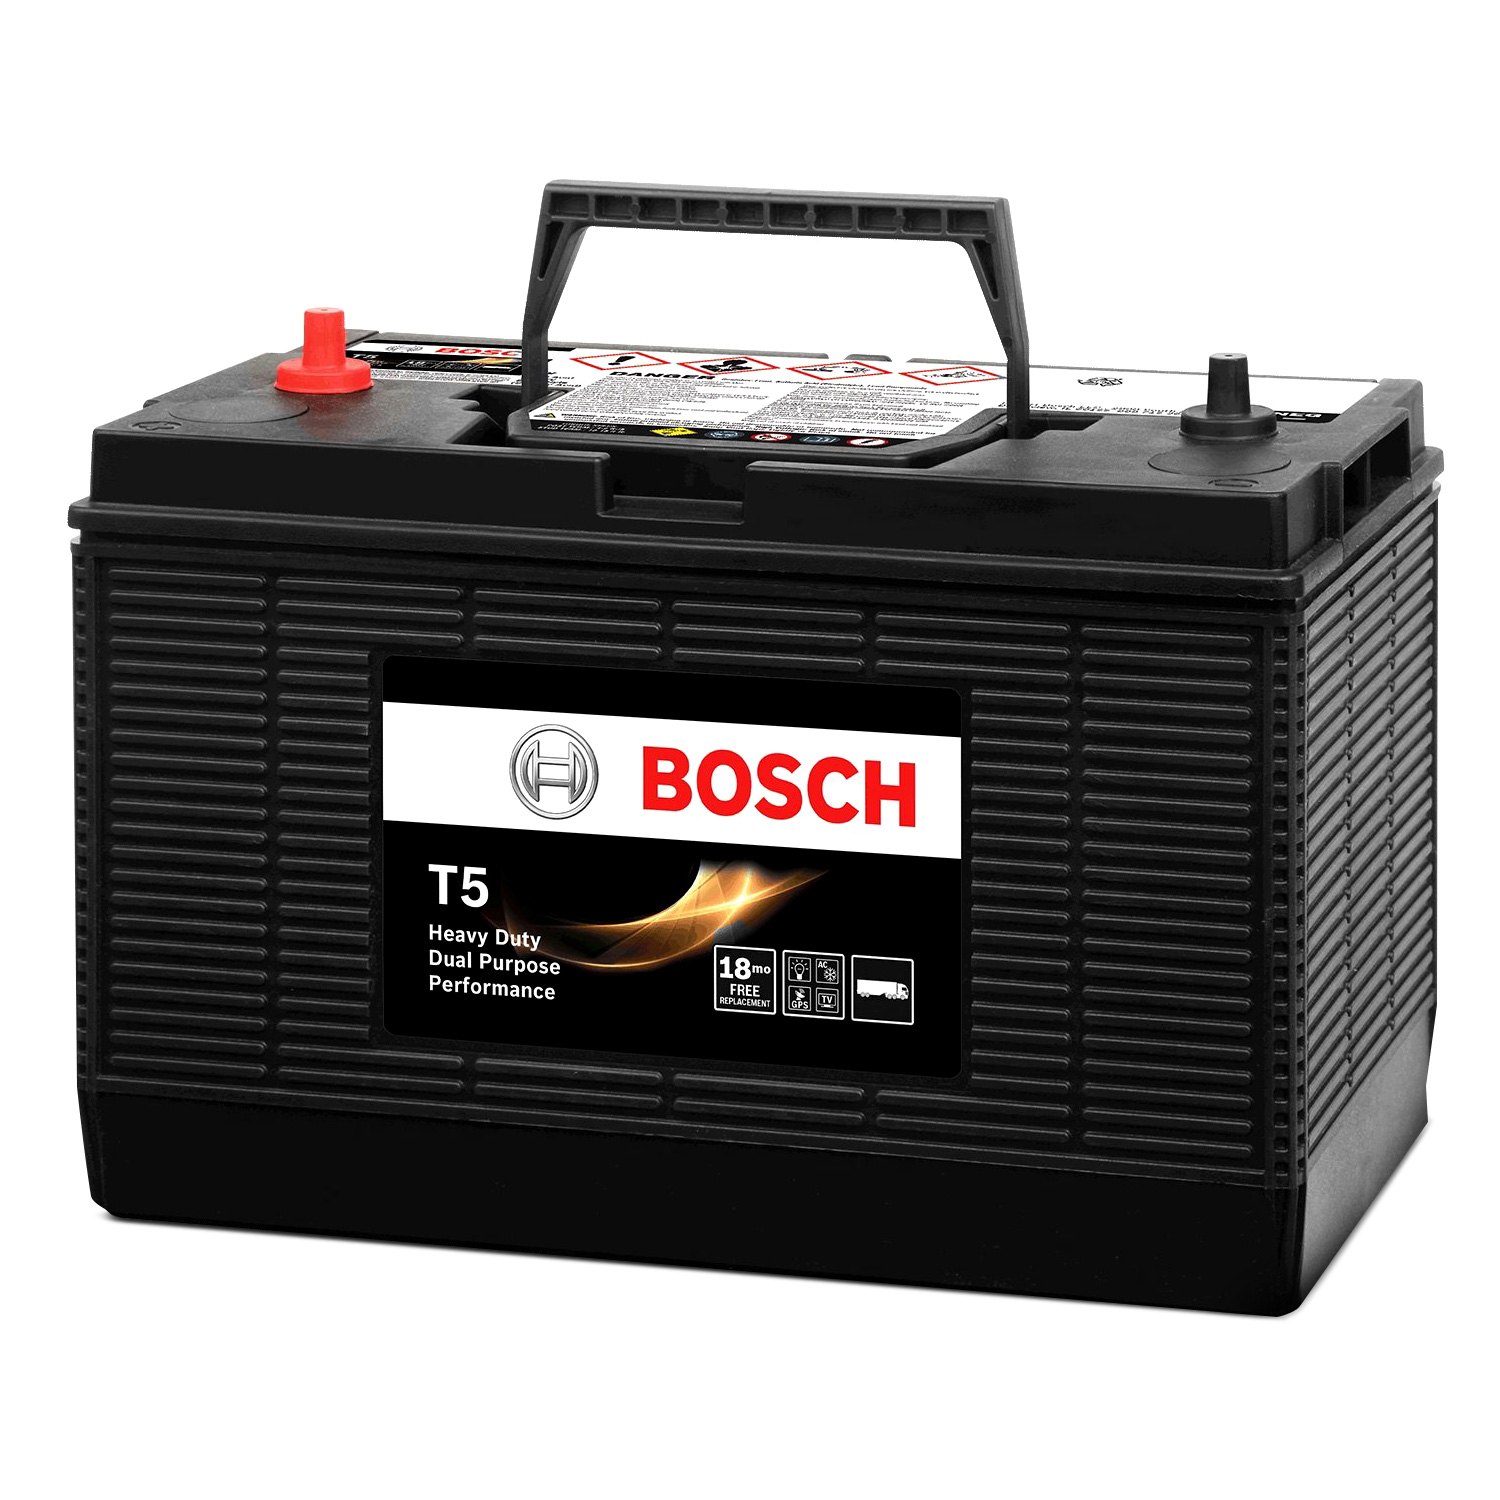 New battery. Аккумулятор Bosch t5 080. Аккумулятор VRLA автомобильный. Bosch t3 072. Аккумулятор автомобильный на прозрачном фоне.